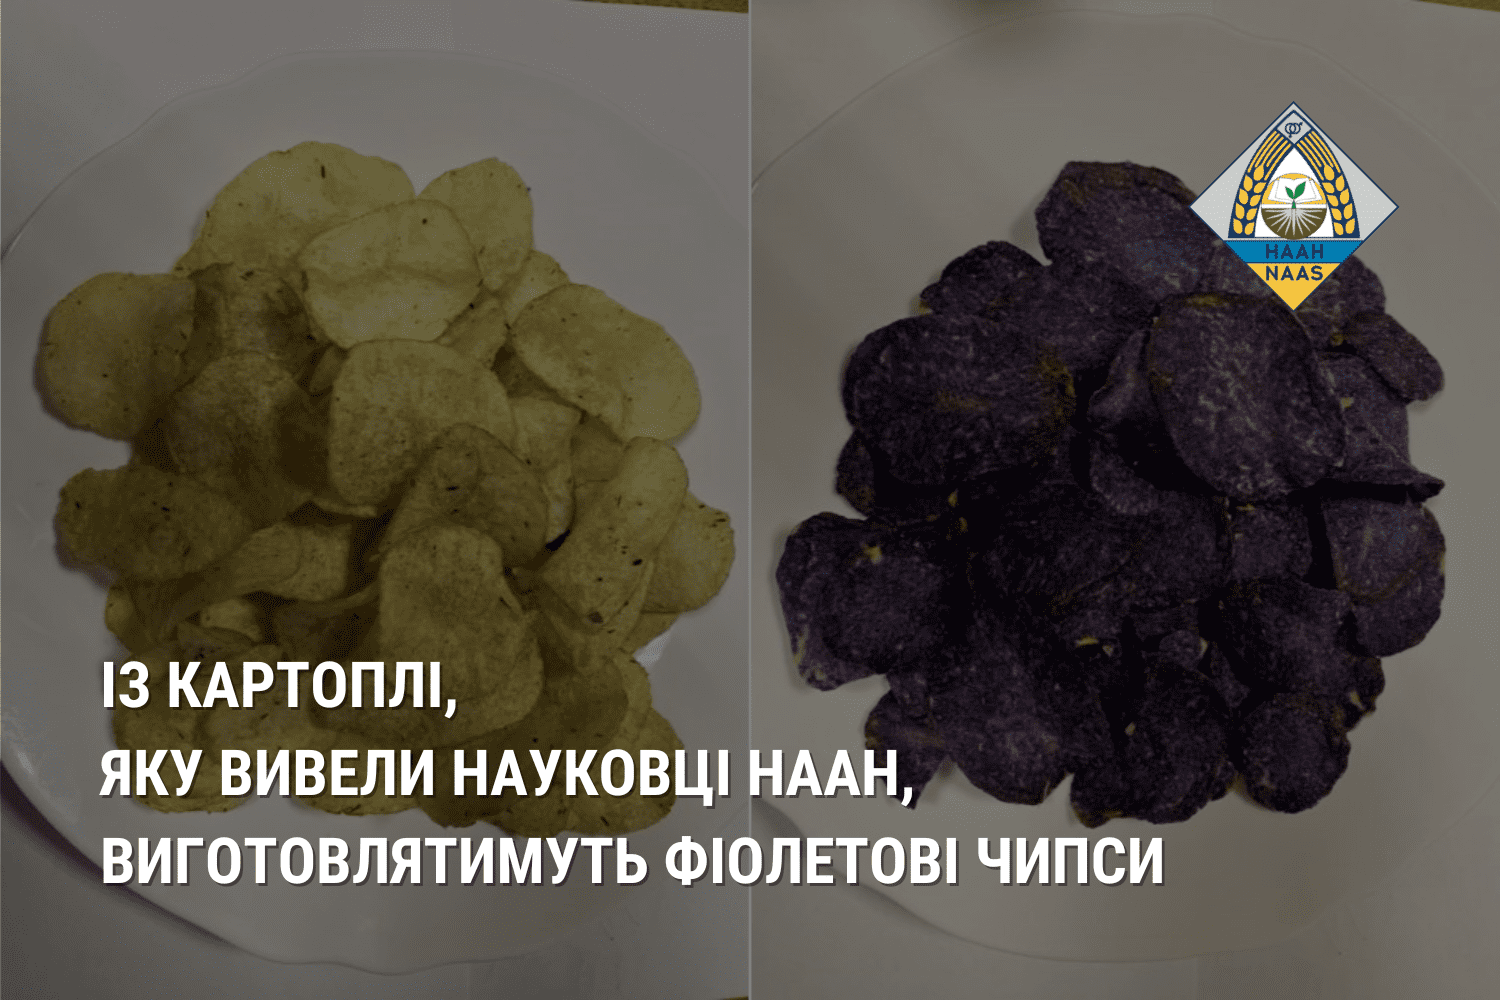 Із картоплі, яку вивели науковці НААН, робитимуть фіолетові чипси